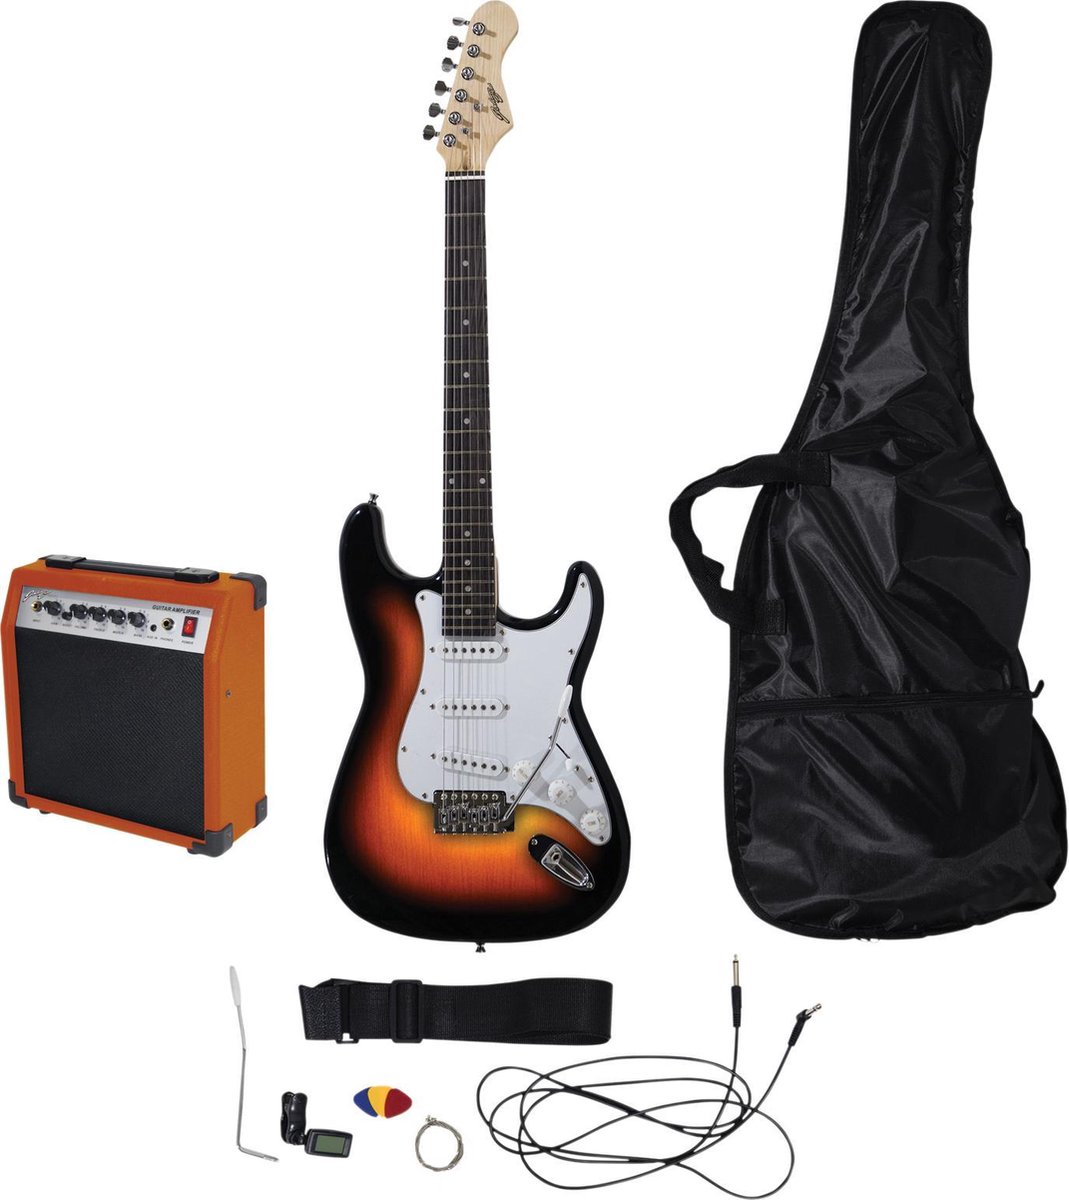 Elektrische gitaar starterset - Johnny Brook JB406 elektrische gitaar starterset met gitaar, 20 Watt versterker en alle benodigde accessoires - Sunburst